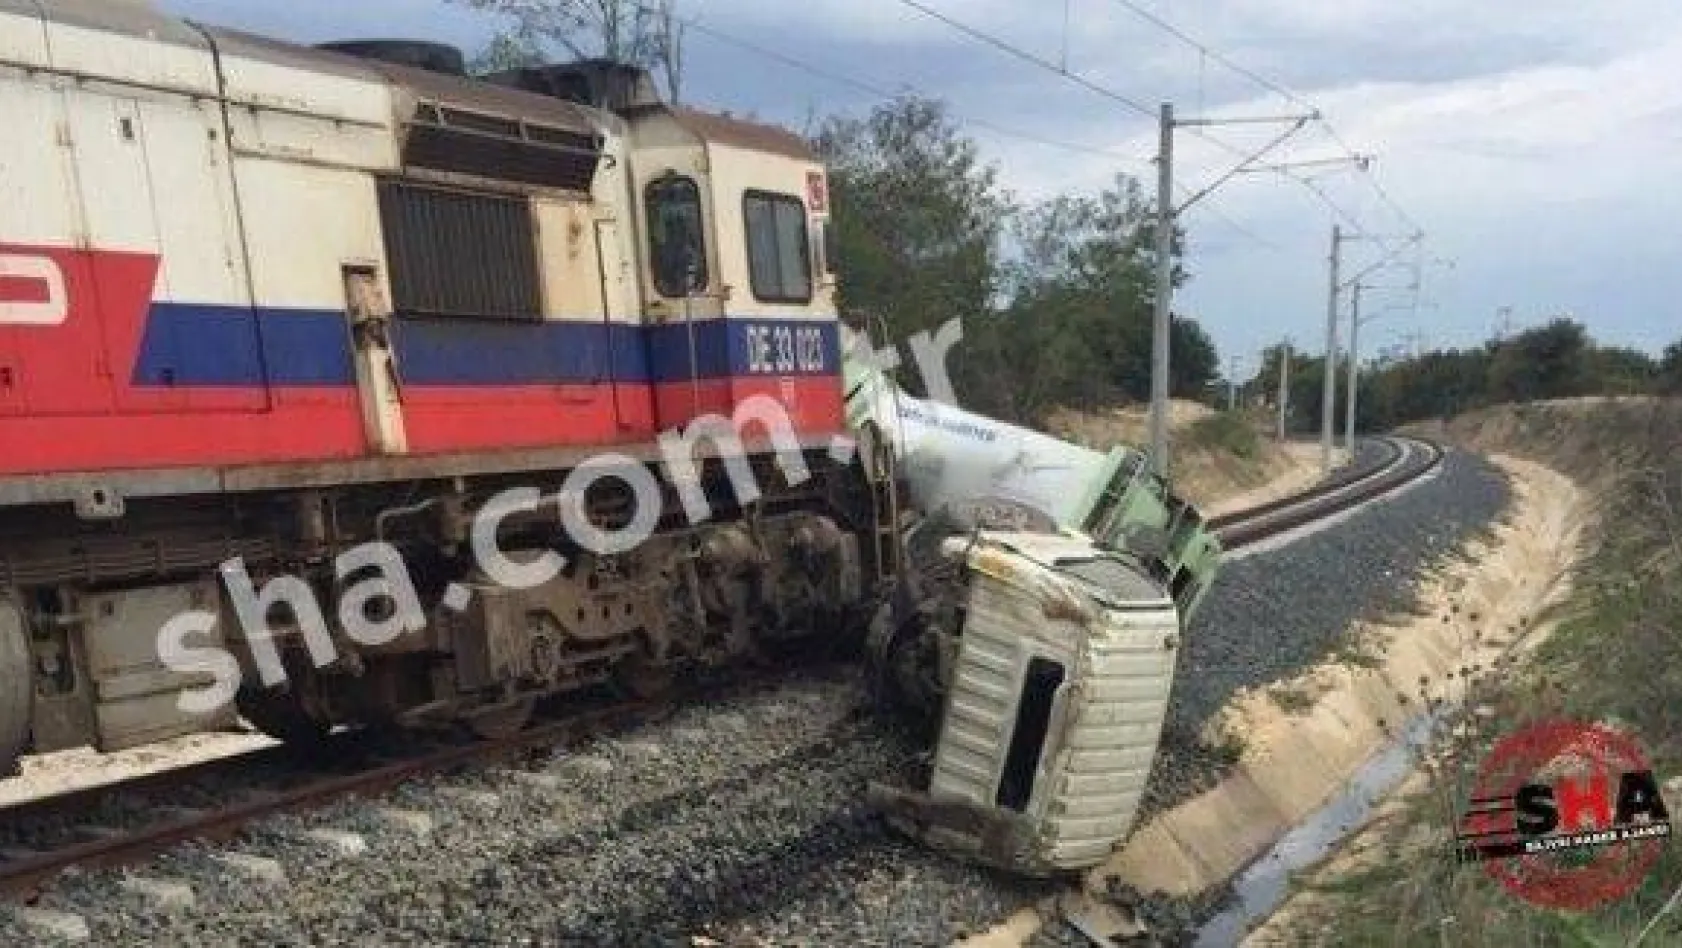 Beyciler'deki tren kazası ucuz atlatıldı